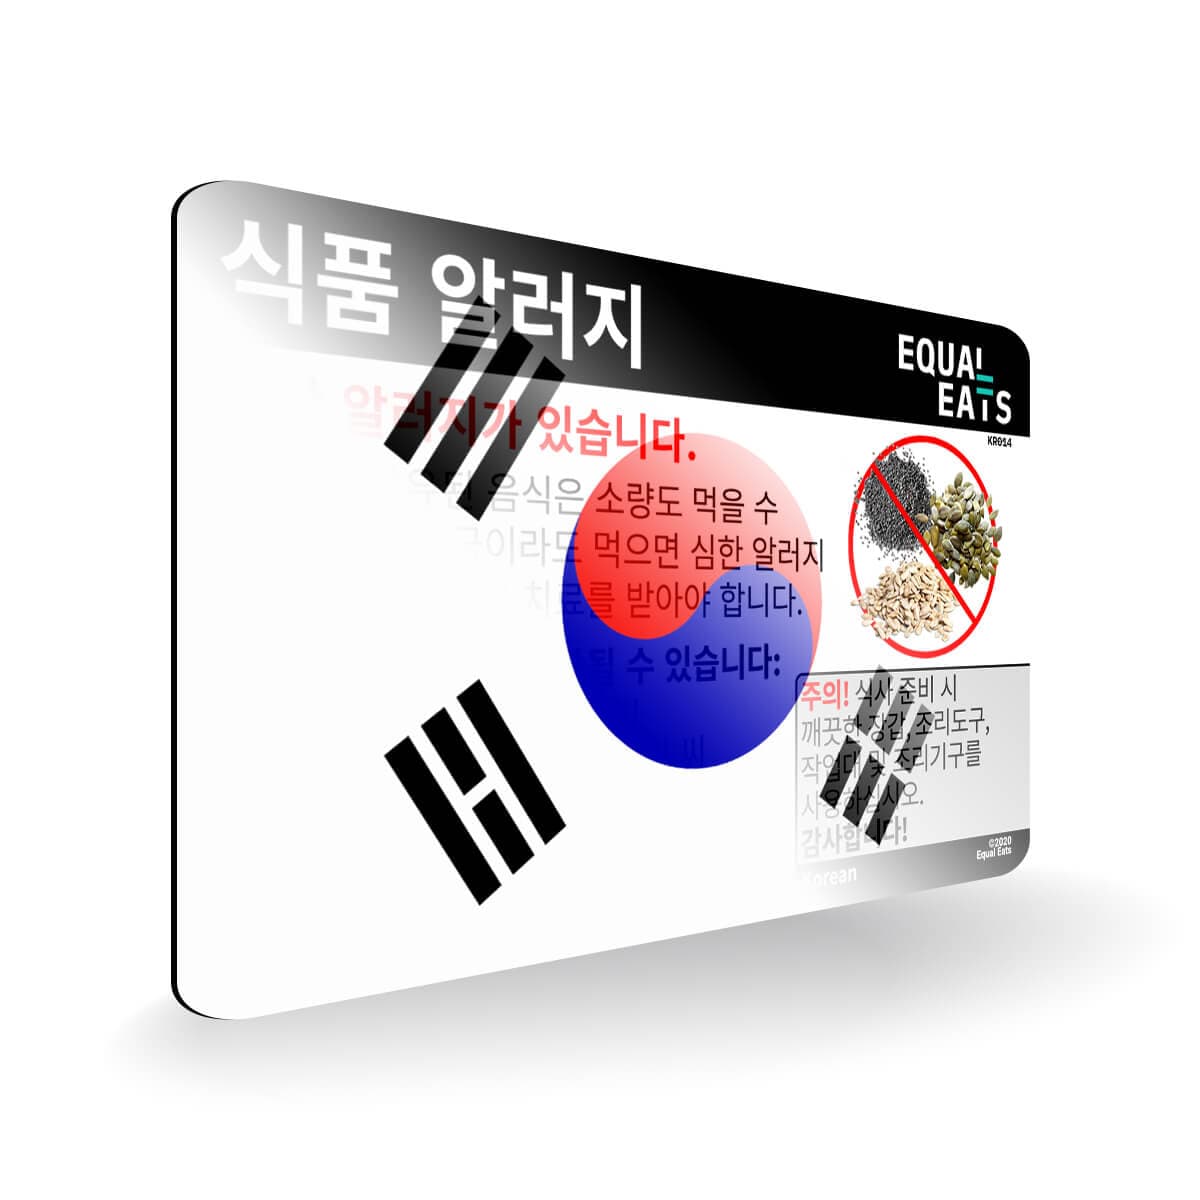 Seed Allergy in Korean. Seed Allergy Card for Korea